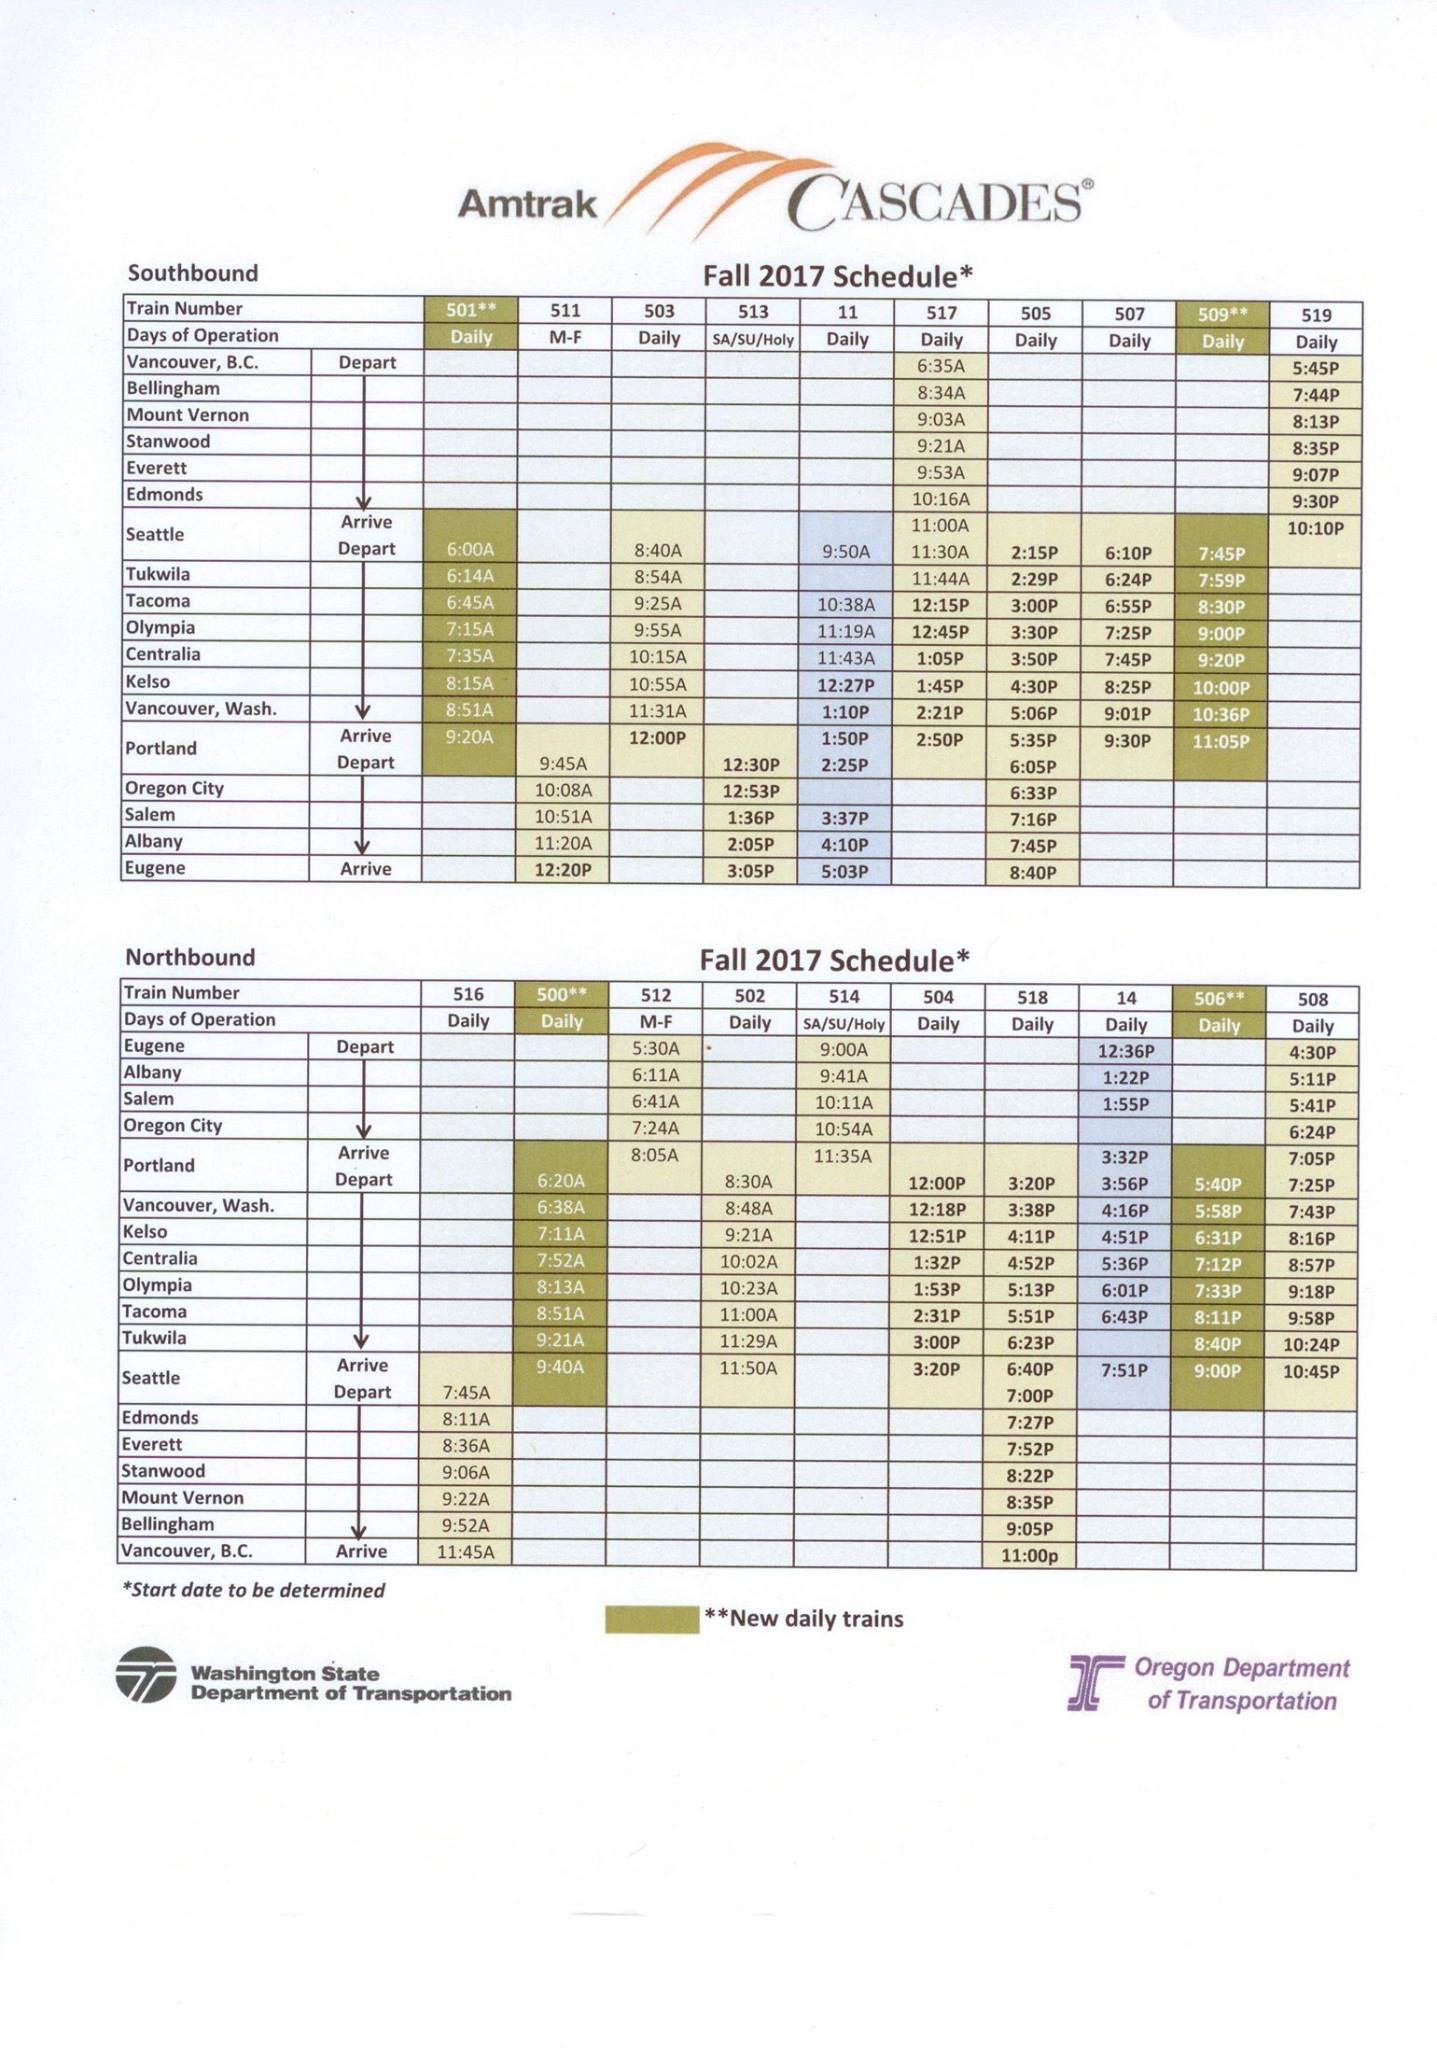 Fall schedule for Amtrak Cascades passenger rail services. (WSDOT)